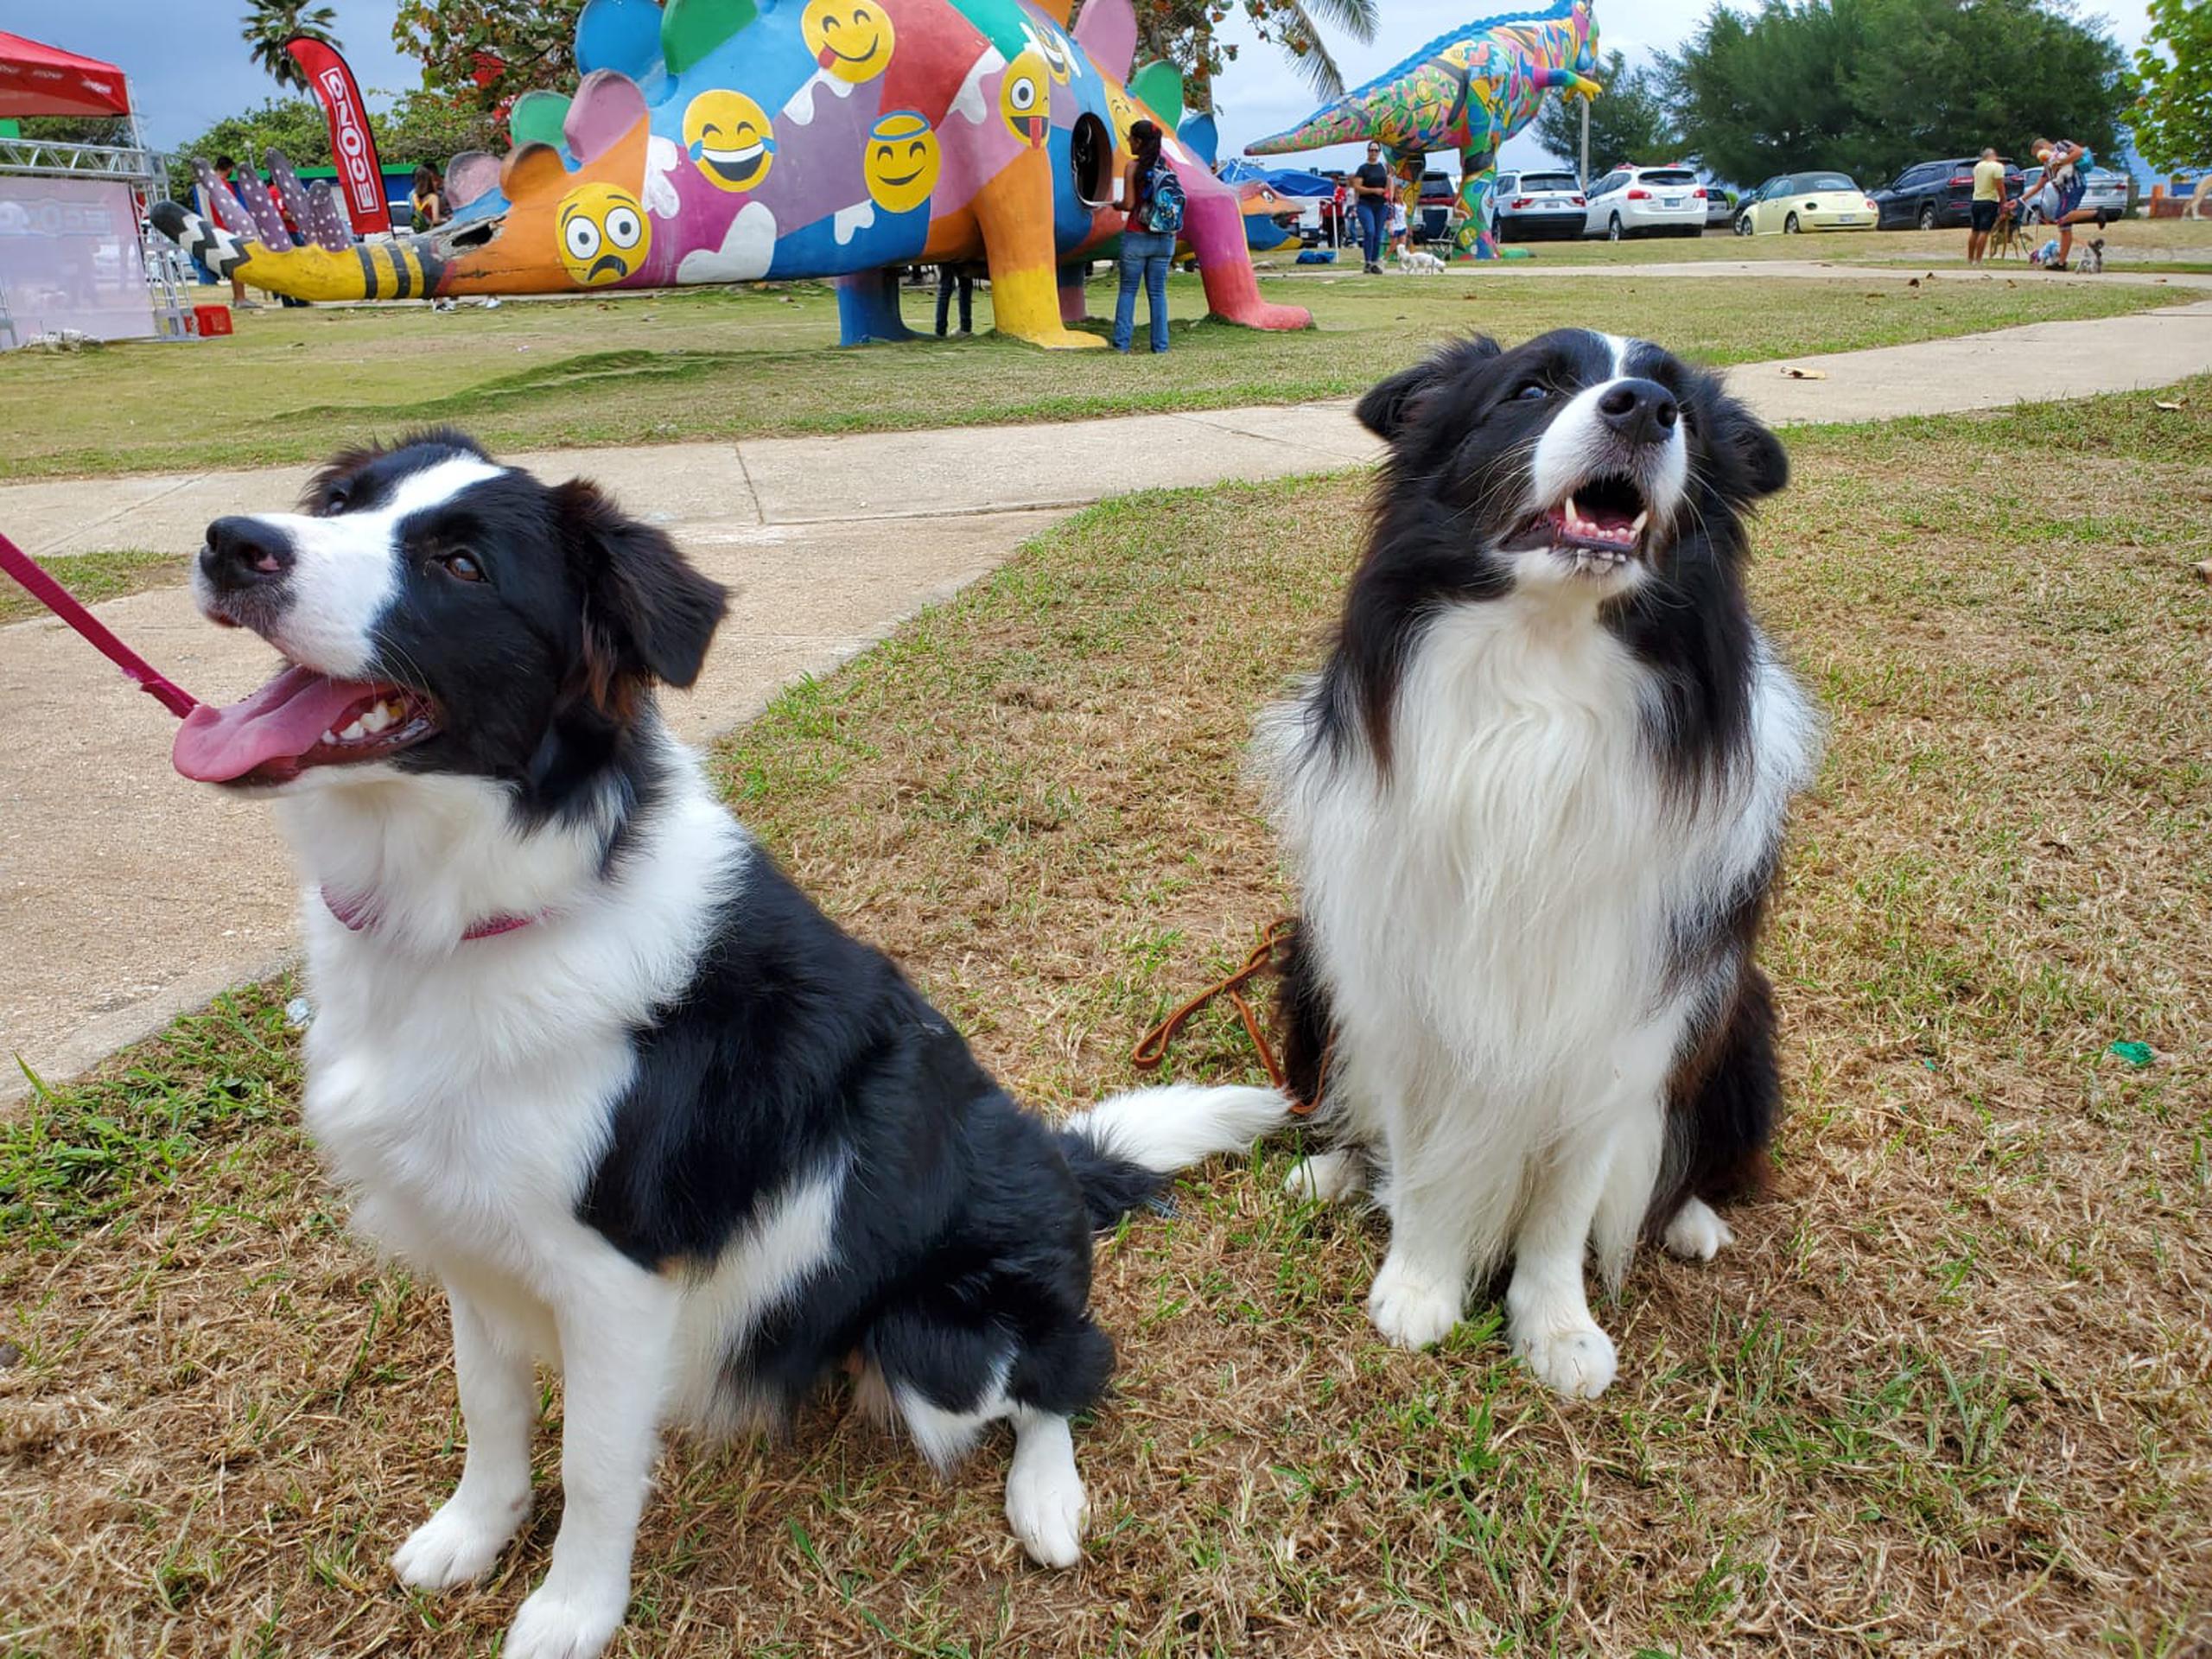 Khala y Billy participaron de la inauguración del parque para mascotas "Arecibo Animal Lover". osman.perez@gfrmedia.com